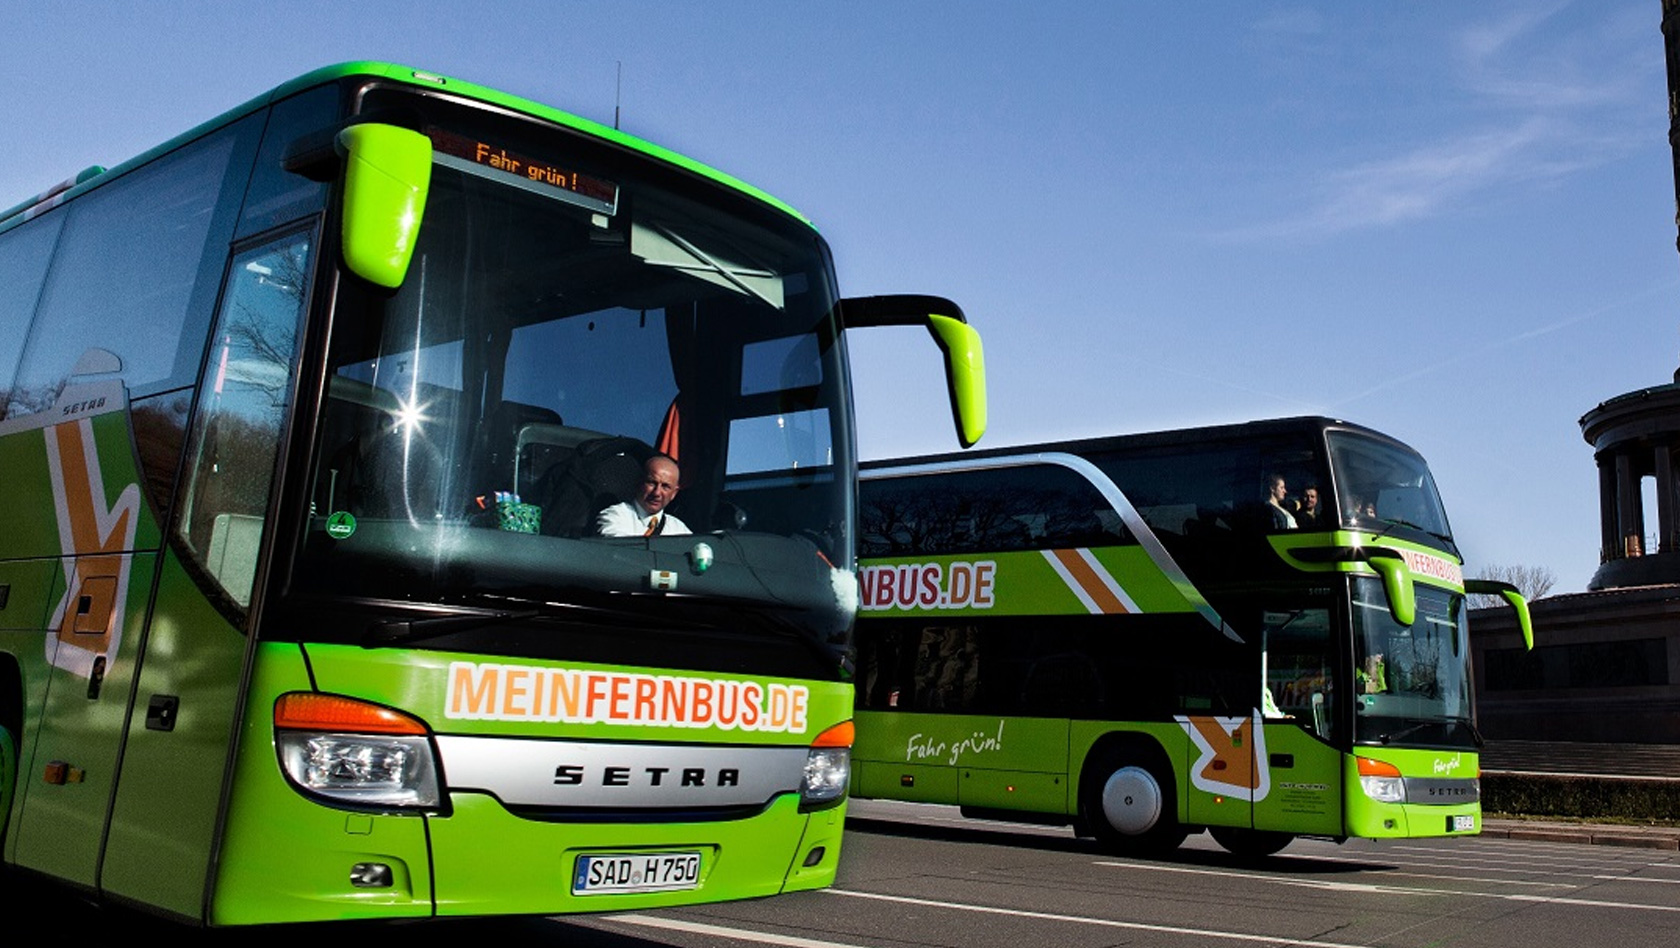 Как недорого ездить по Европе: автобусы компании Meinfernbus ( FlixBus ) – 2019   *